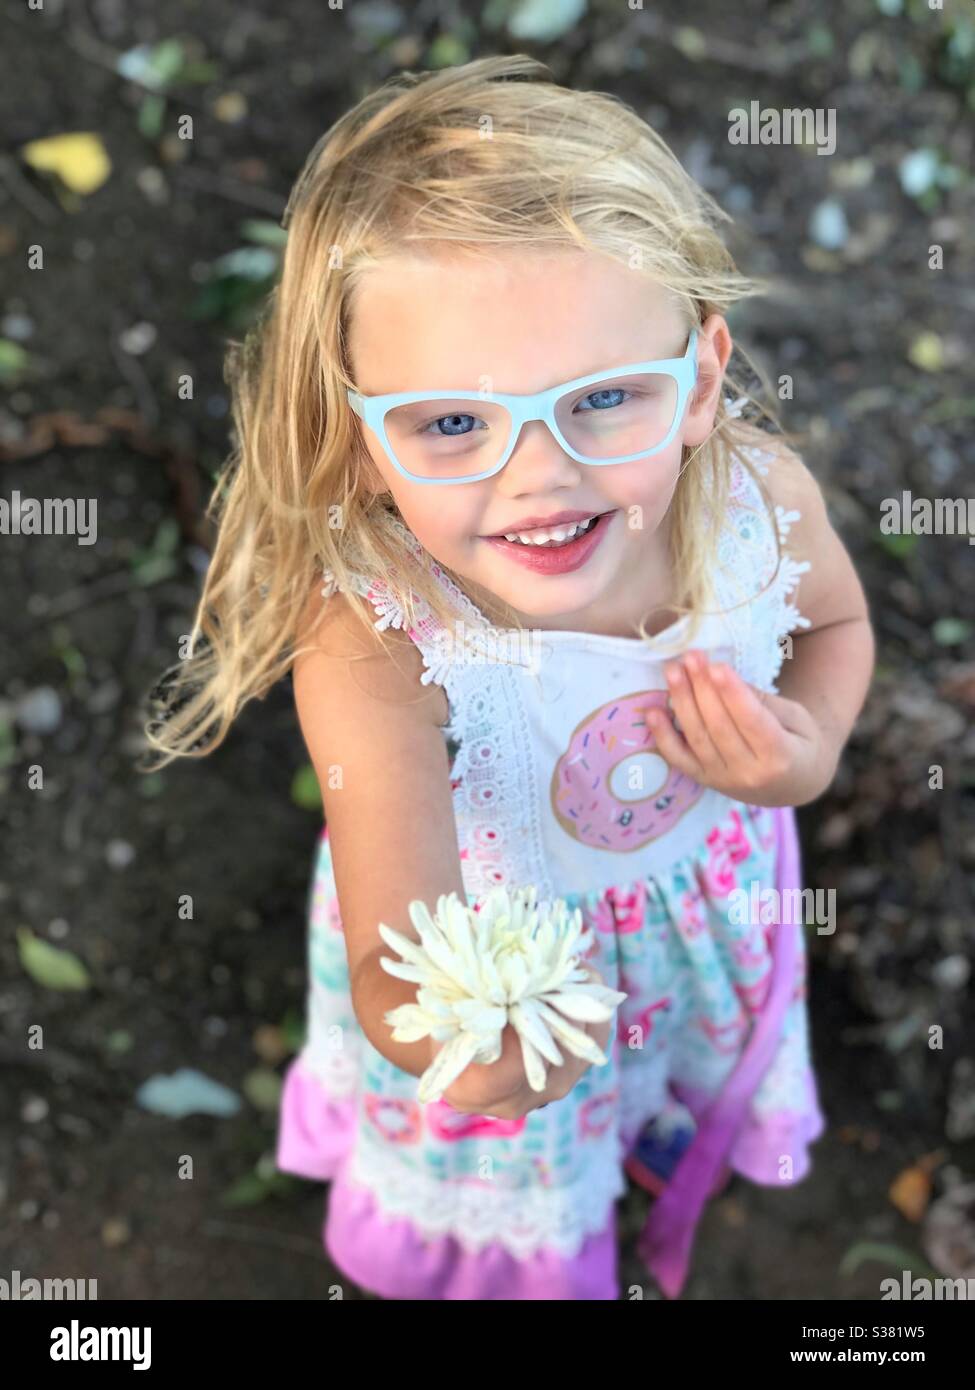 Kleines Mädchen zeigt eine Blume, die sie gefunden hat. Aufgeregt mit einem Lächeln. Stockfoto